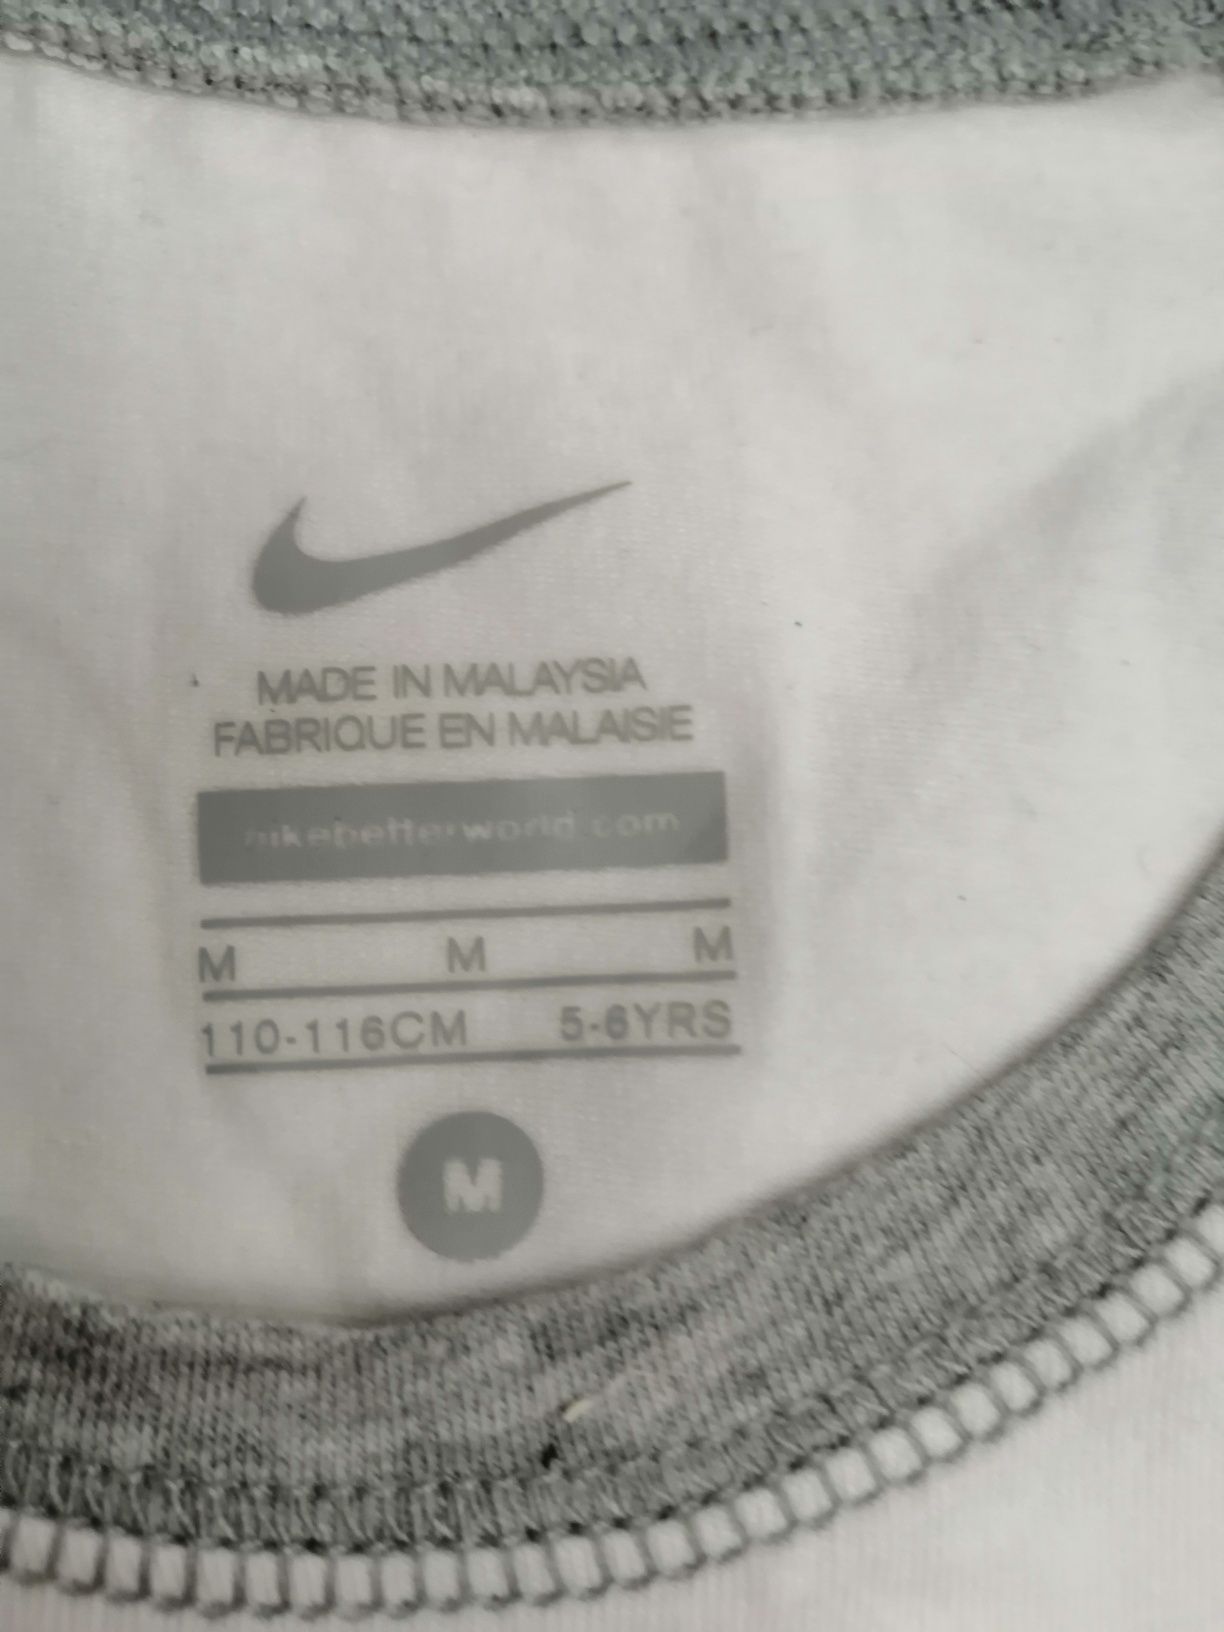 Koszulka dziecięca rozmiar 110 116 Nike jak nowa